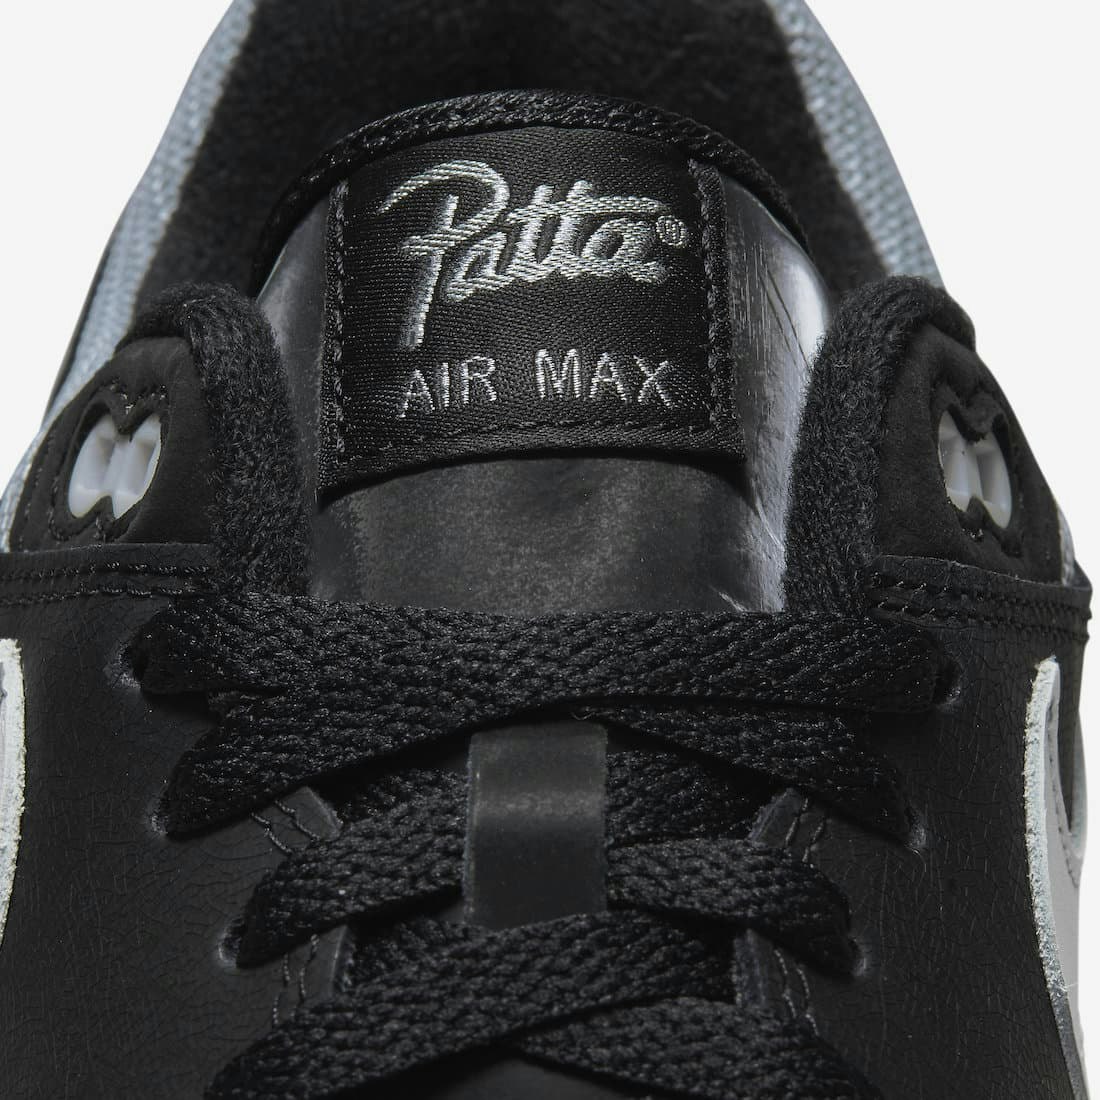 Patta x Nike Air Max 1 Waves "Black Silver"